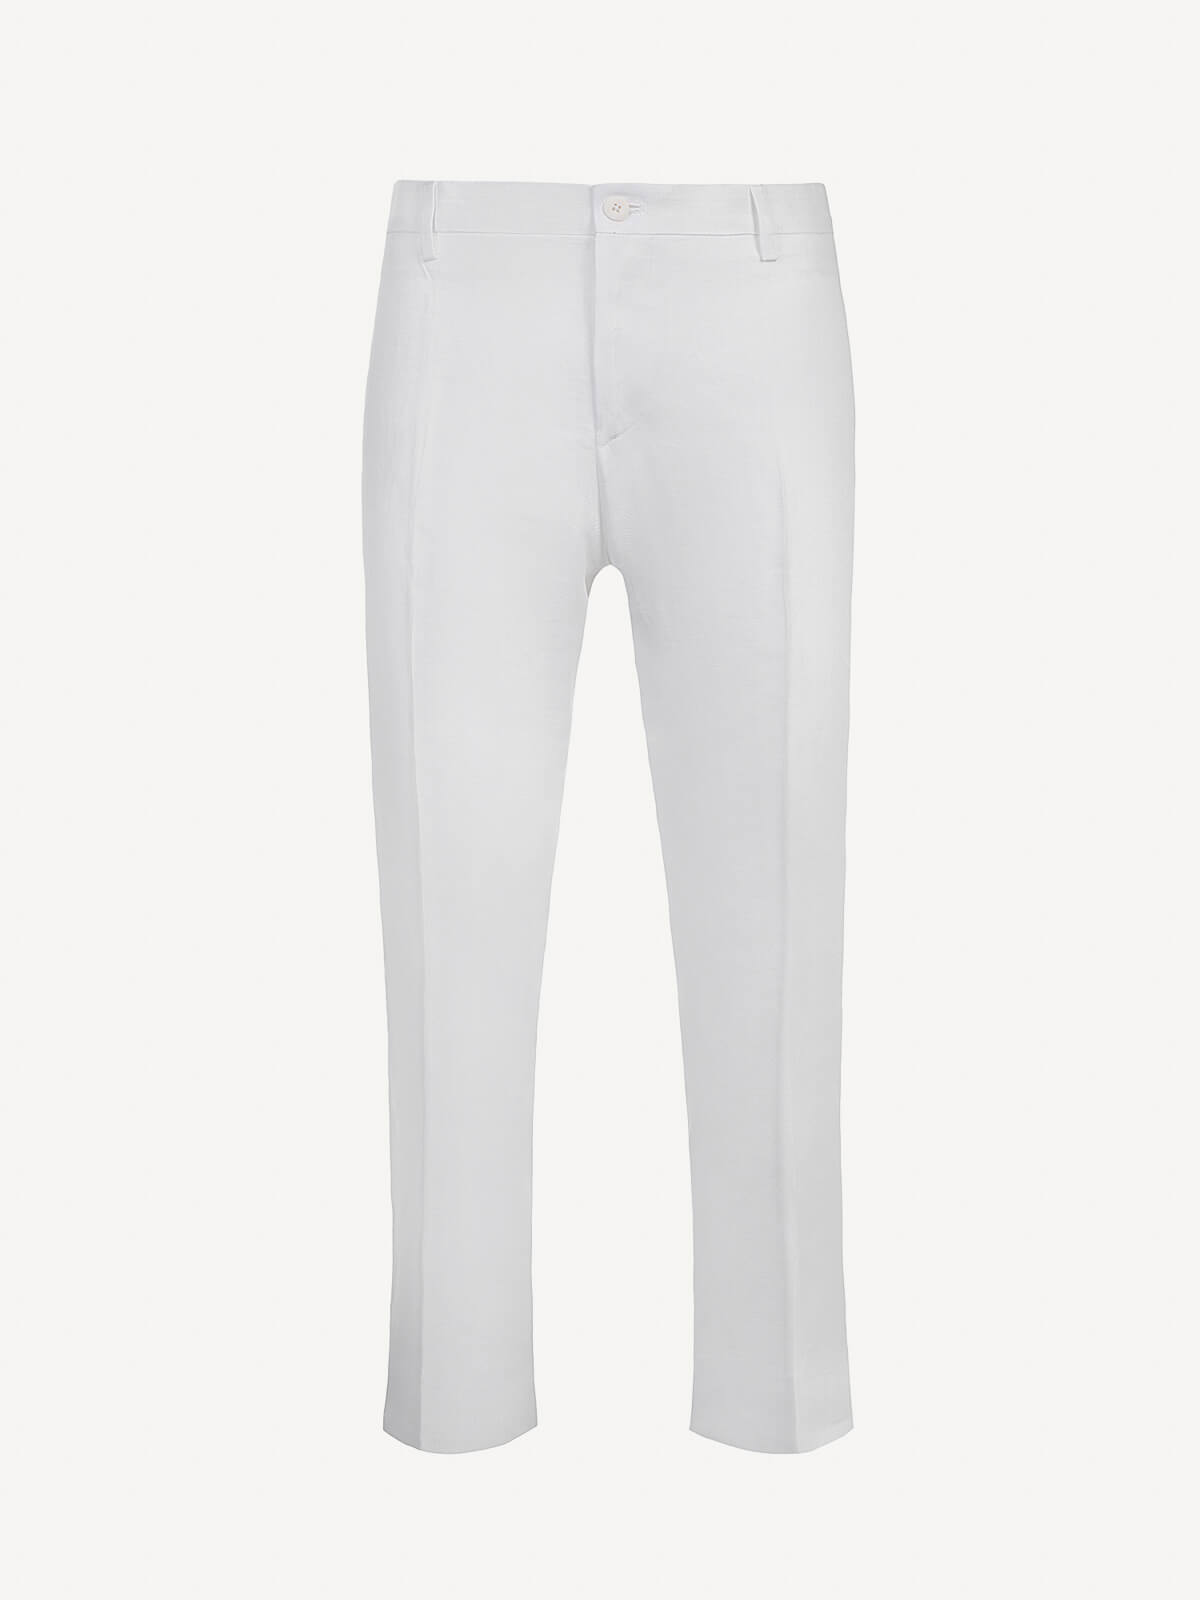 Pantalone New Capri for woman 100% Capri white linen pant front